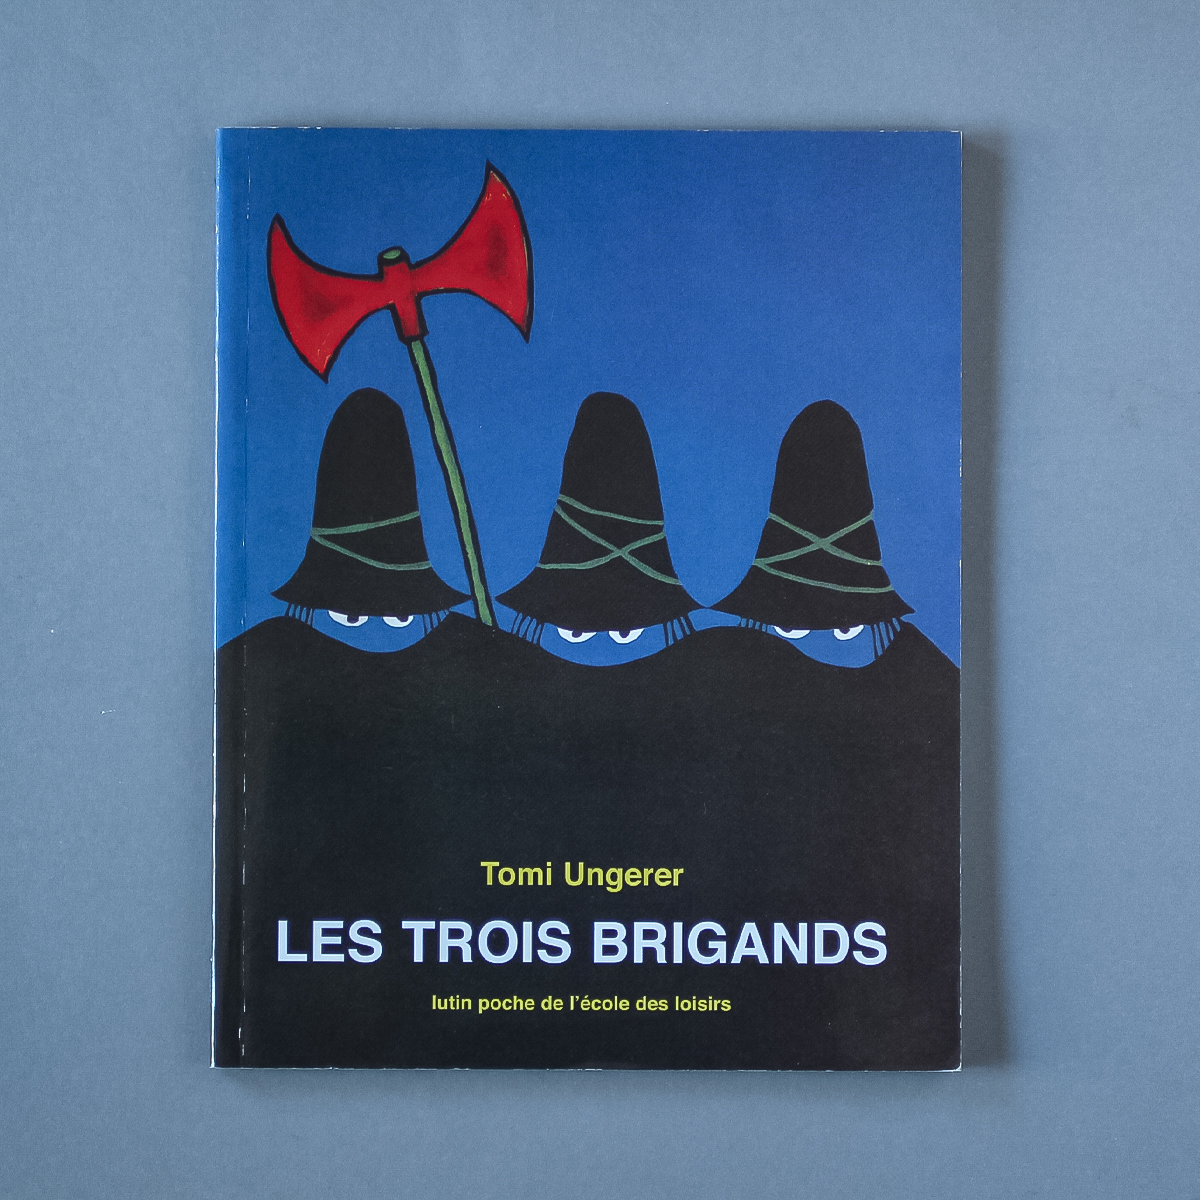 すてきな三にんぐみ フランス語 LES TROIS BRIGANDS 絵本 洋書 アート デザイン トミアンゲラー トミーウンゲラー Picture book France